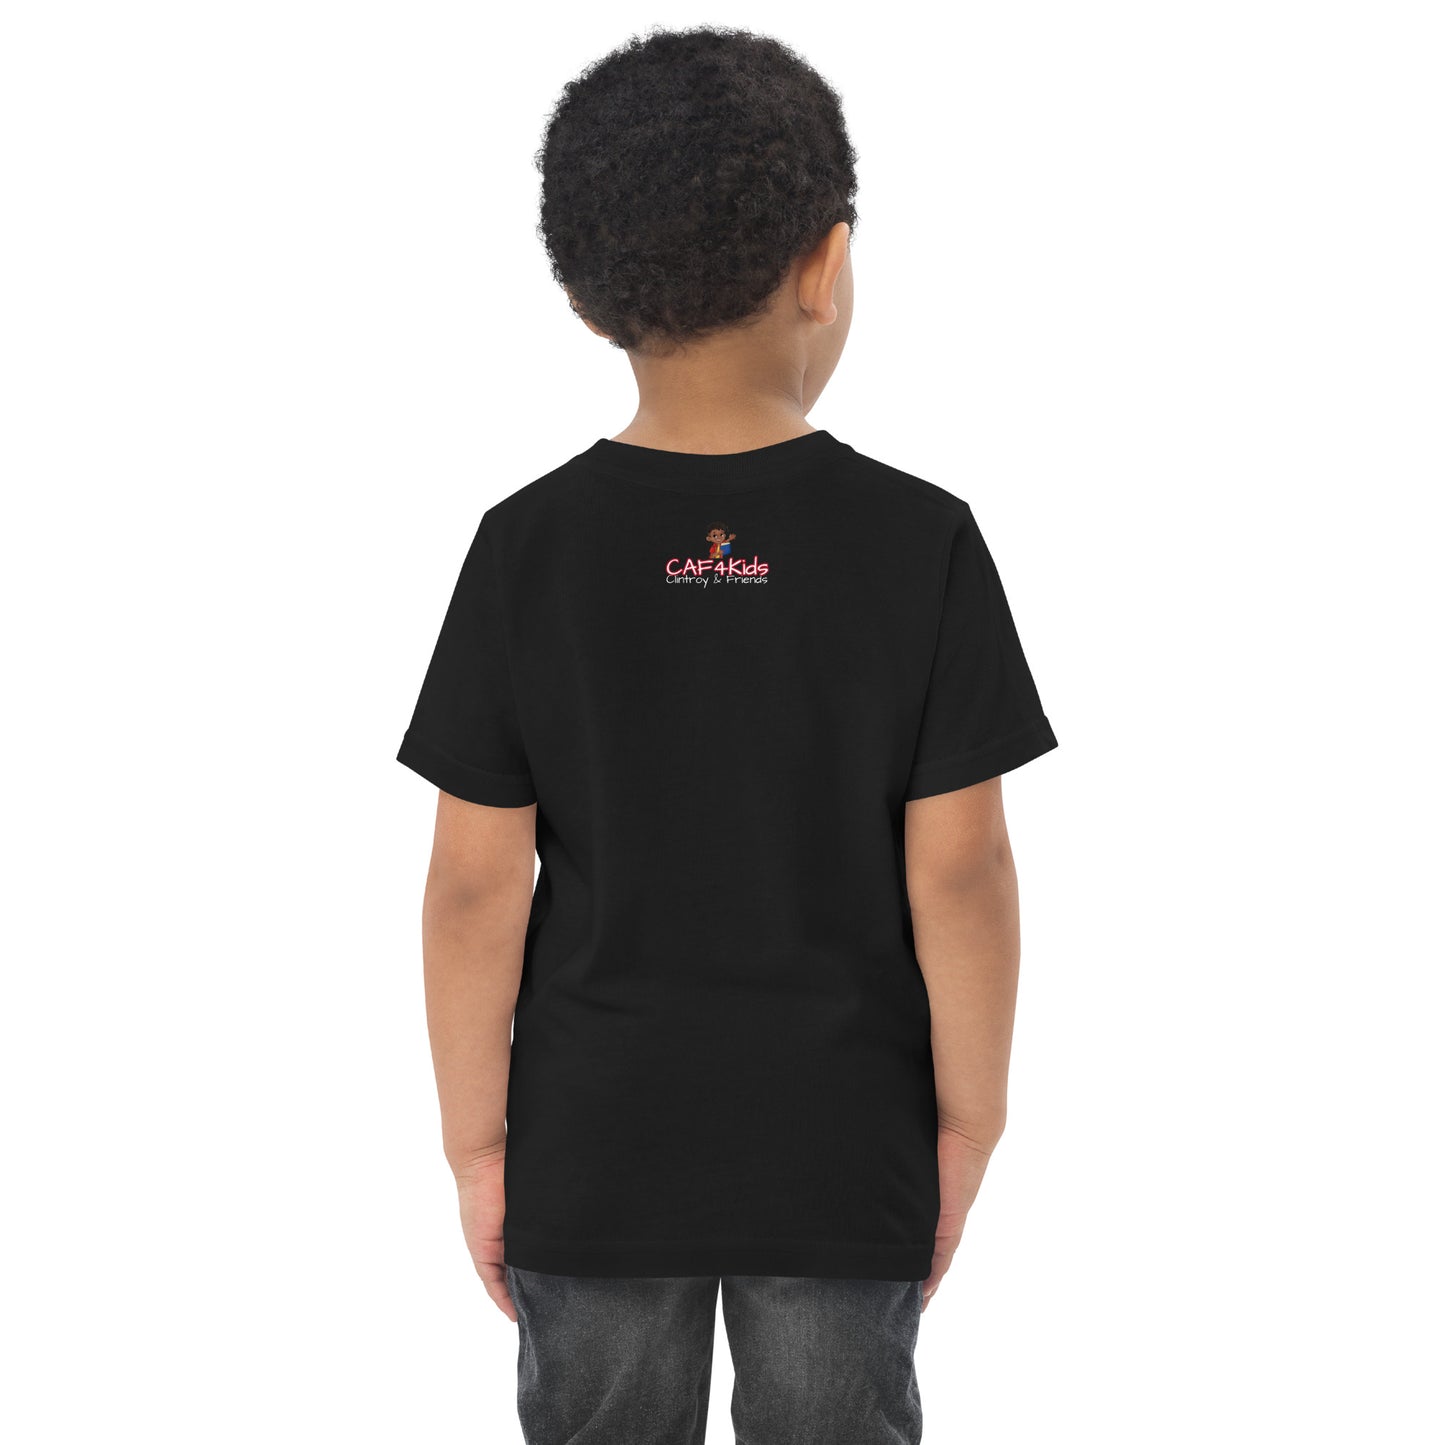 CAF4Kids Black Toddler T-shirt - Letter I